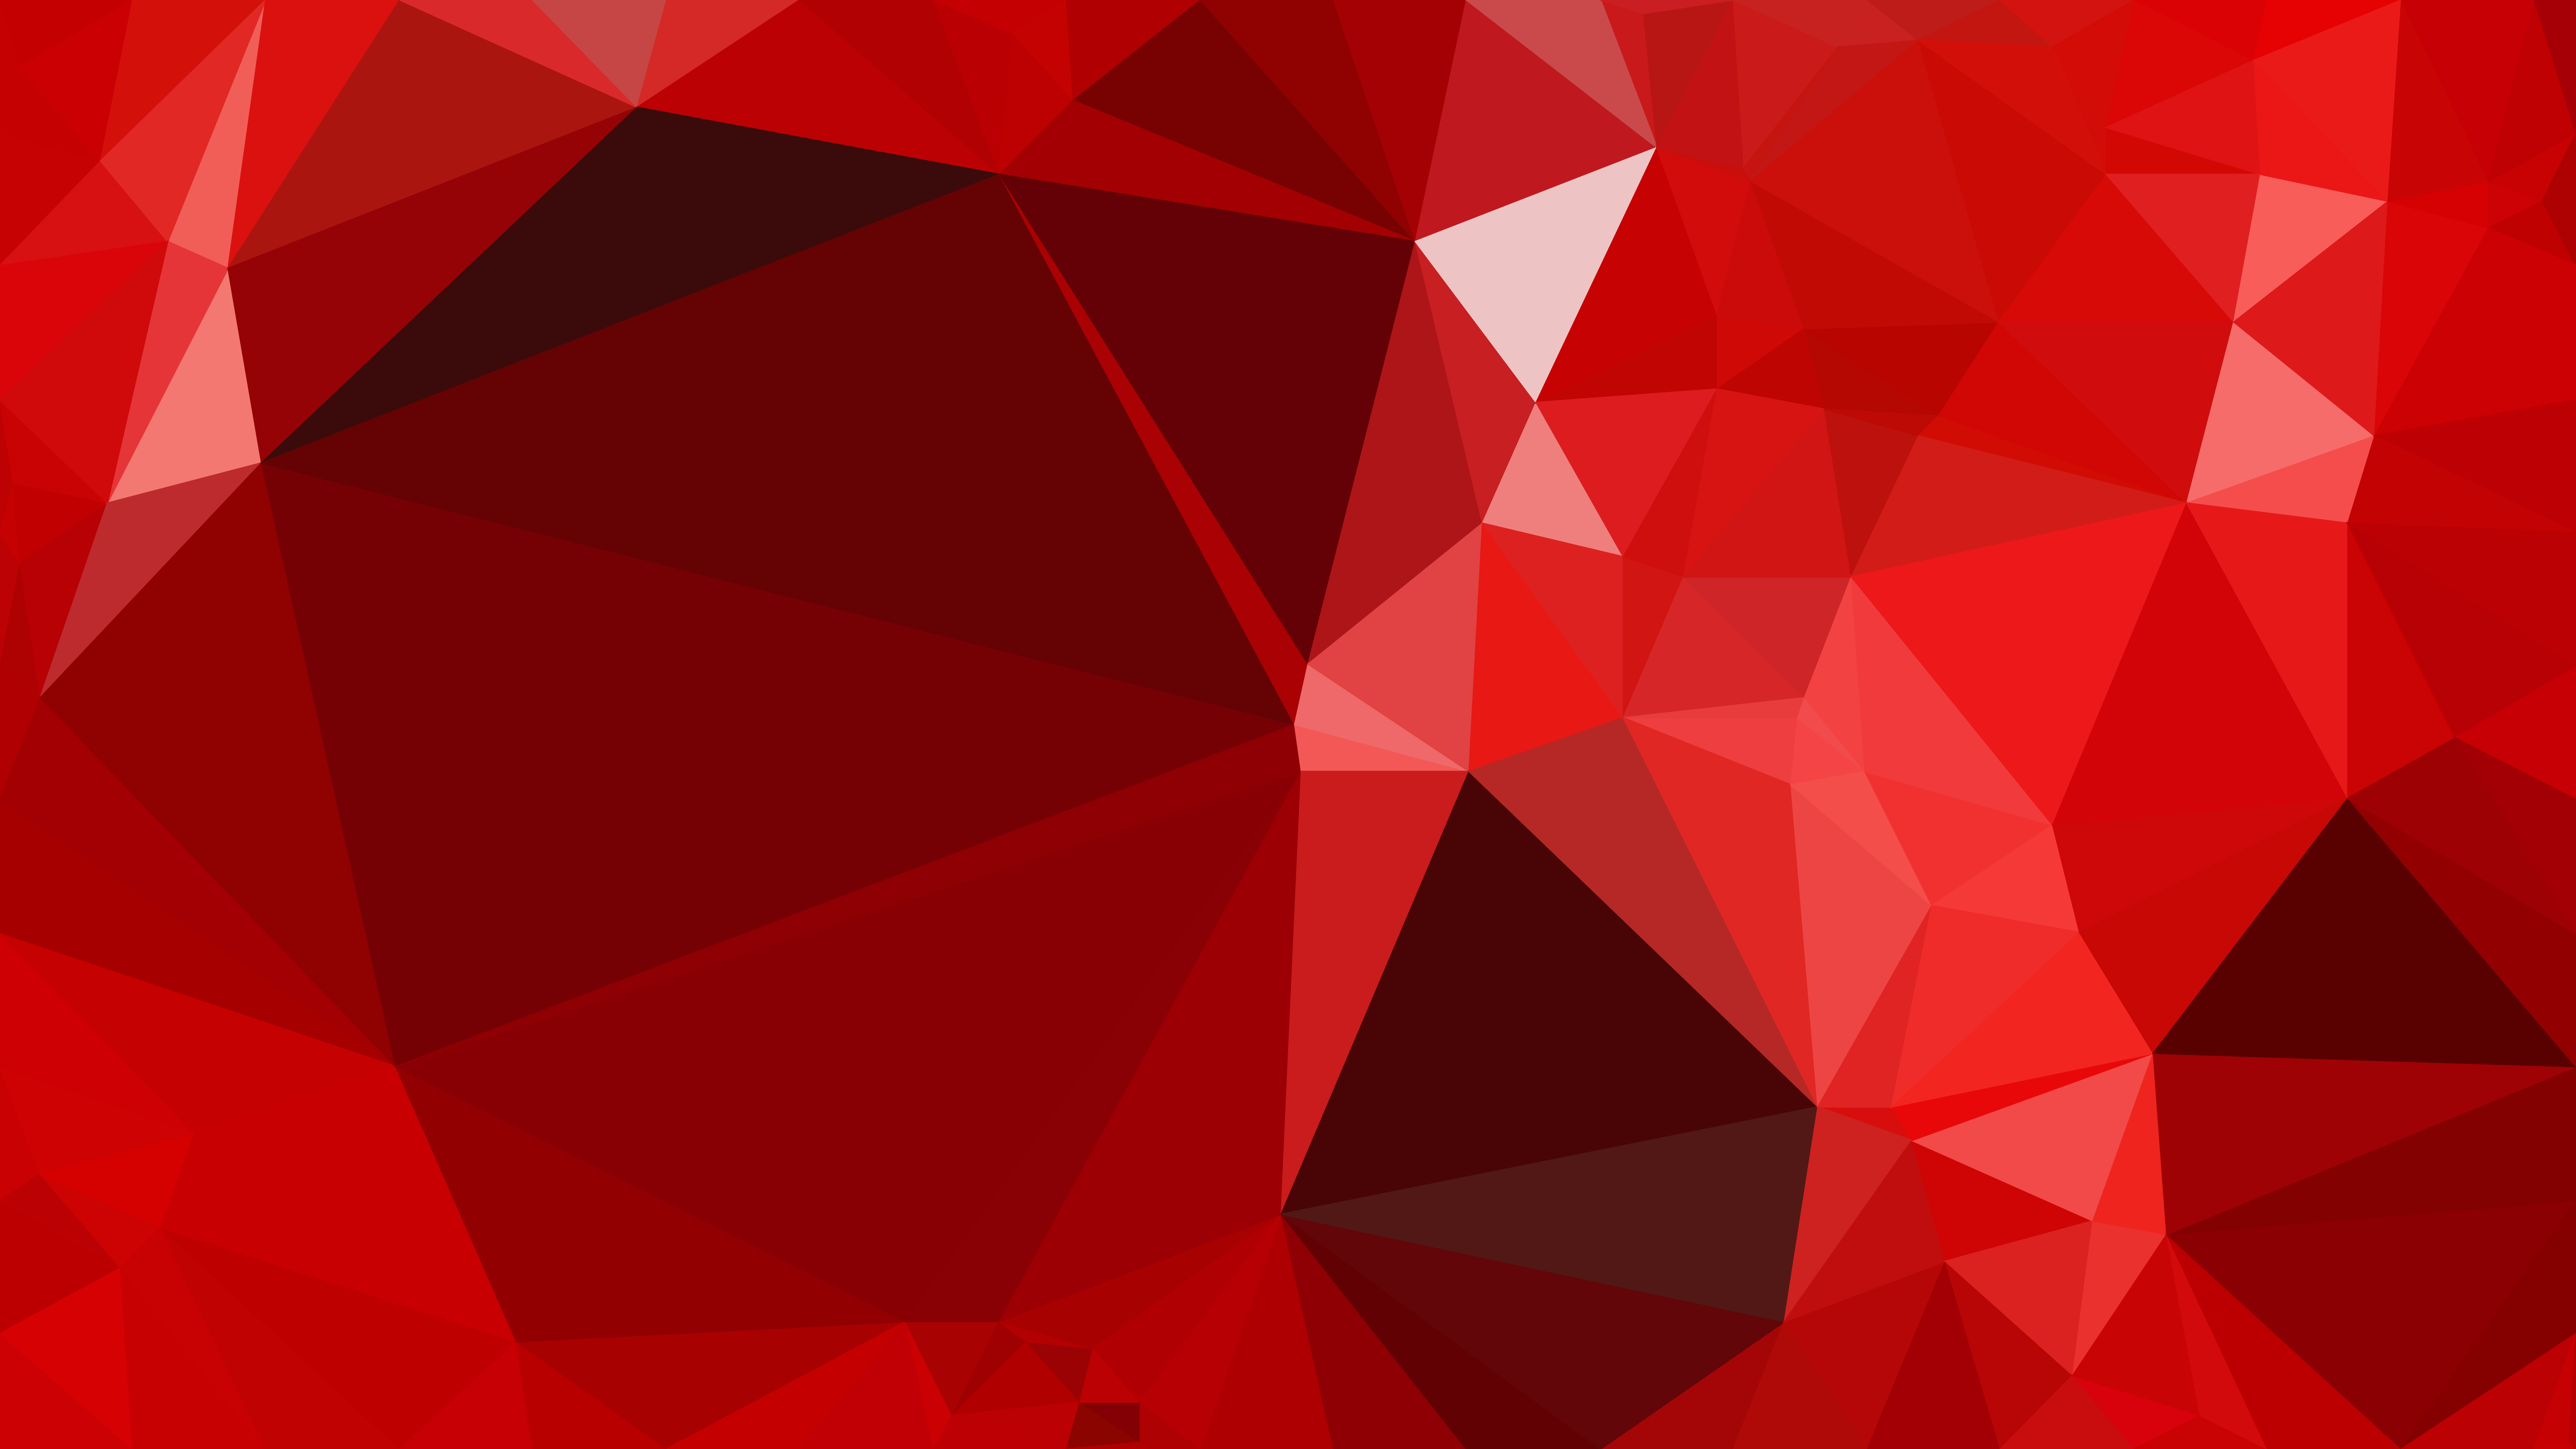 Mẫu nền đa giác đỏ miễn phí: Với mẫu nền đa giác đỏ miễn phí, bạn sẽ có thể tạo ra một bức ảnh độc đáo và ấn tượng. Sự kết hợp giữa nhiều hình đa giác và gam màu đỏ sẽ tạo nên một hiệu ứng mạnh mẽ và cuốn hút cho bức ảnh của bạn. Hãy khám phá và tận dụng cơ hội này!